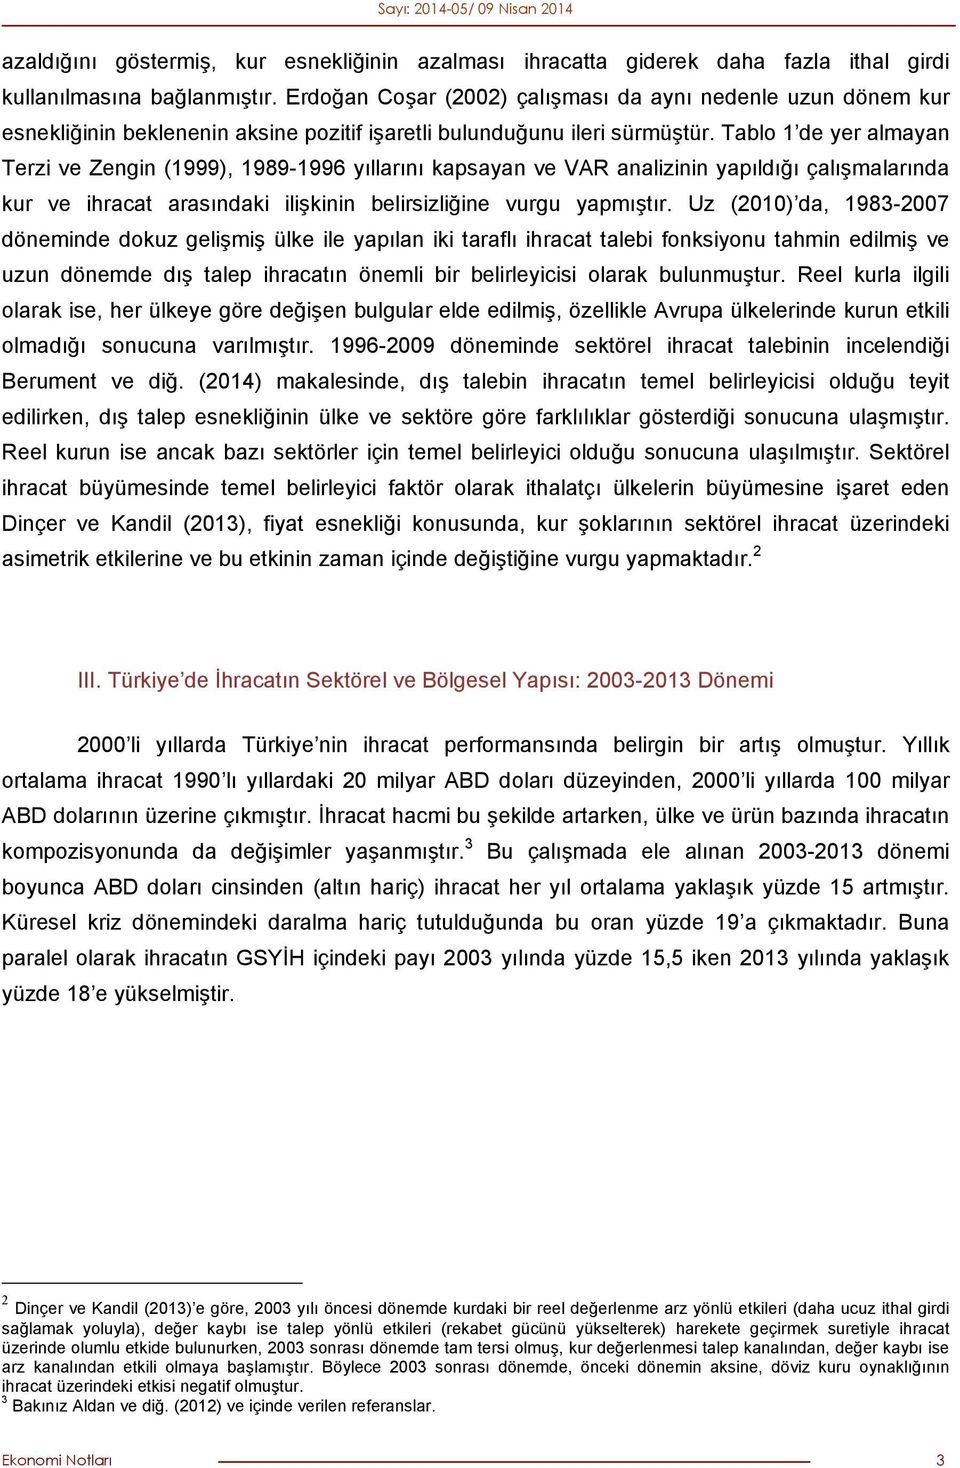 Tablo 1 de yer almayan Terzi ve Zengin (1999), 1989-1996 yıllarını kapsayan ve VAR analizinin yapıldığı çalışmalarında kur ve ihracat arasındaki ilişkinin belirsizliğine vurgu yapmıştır.